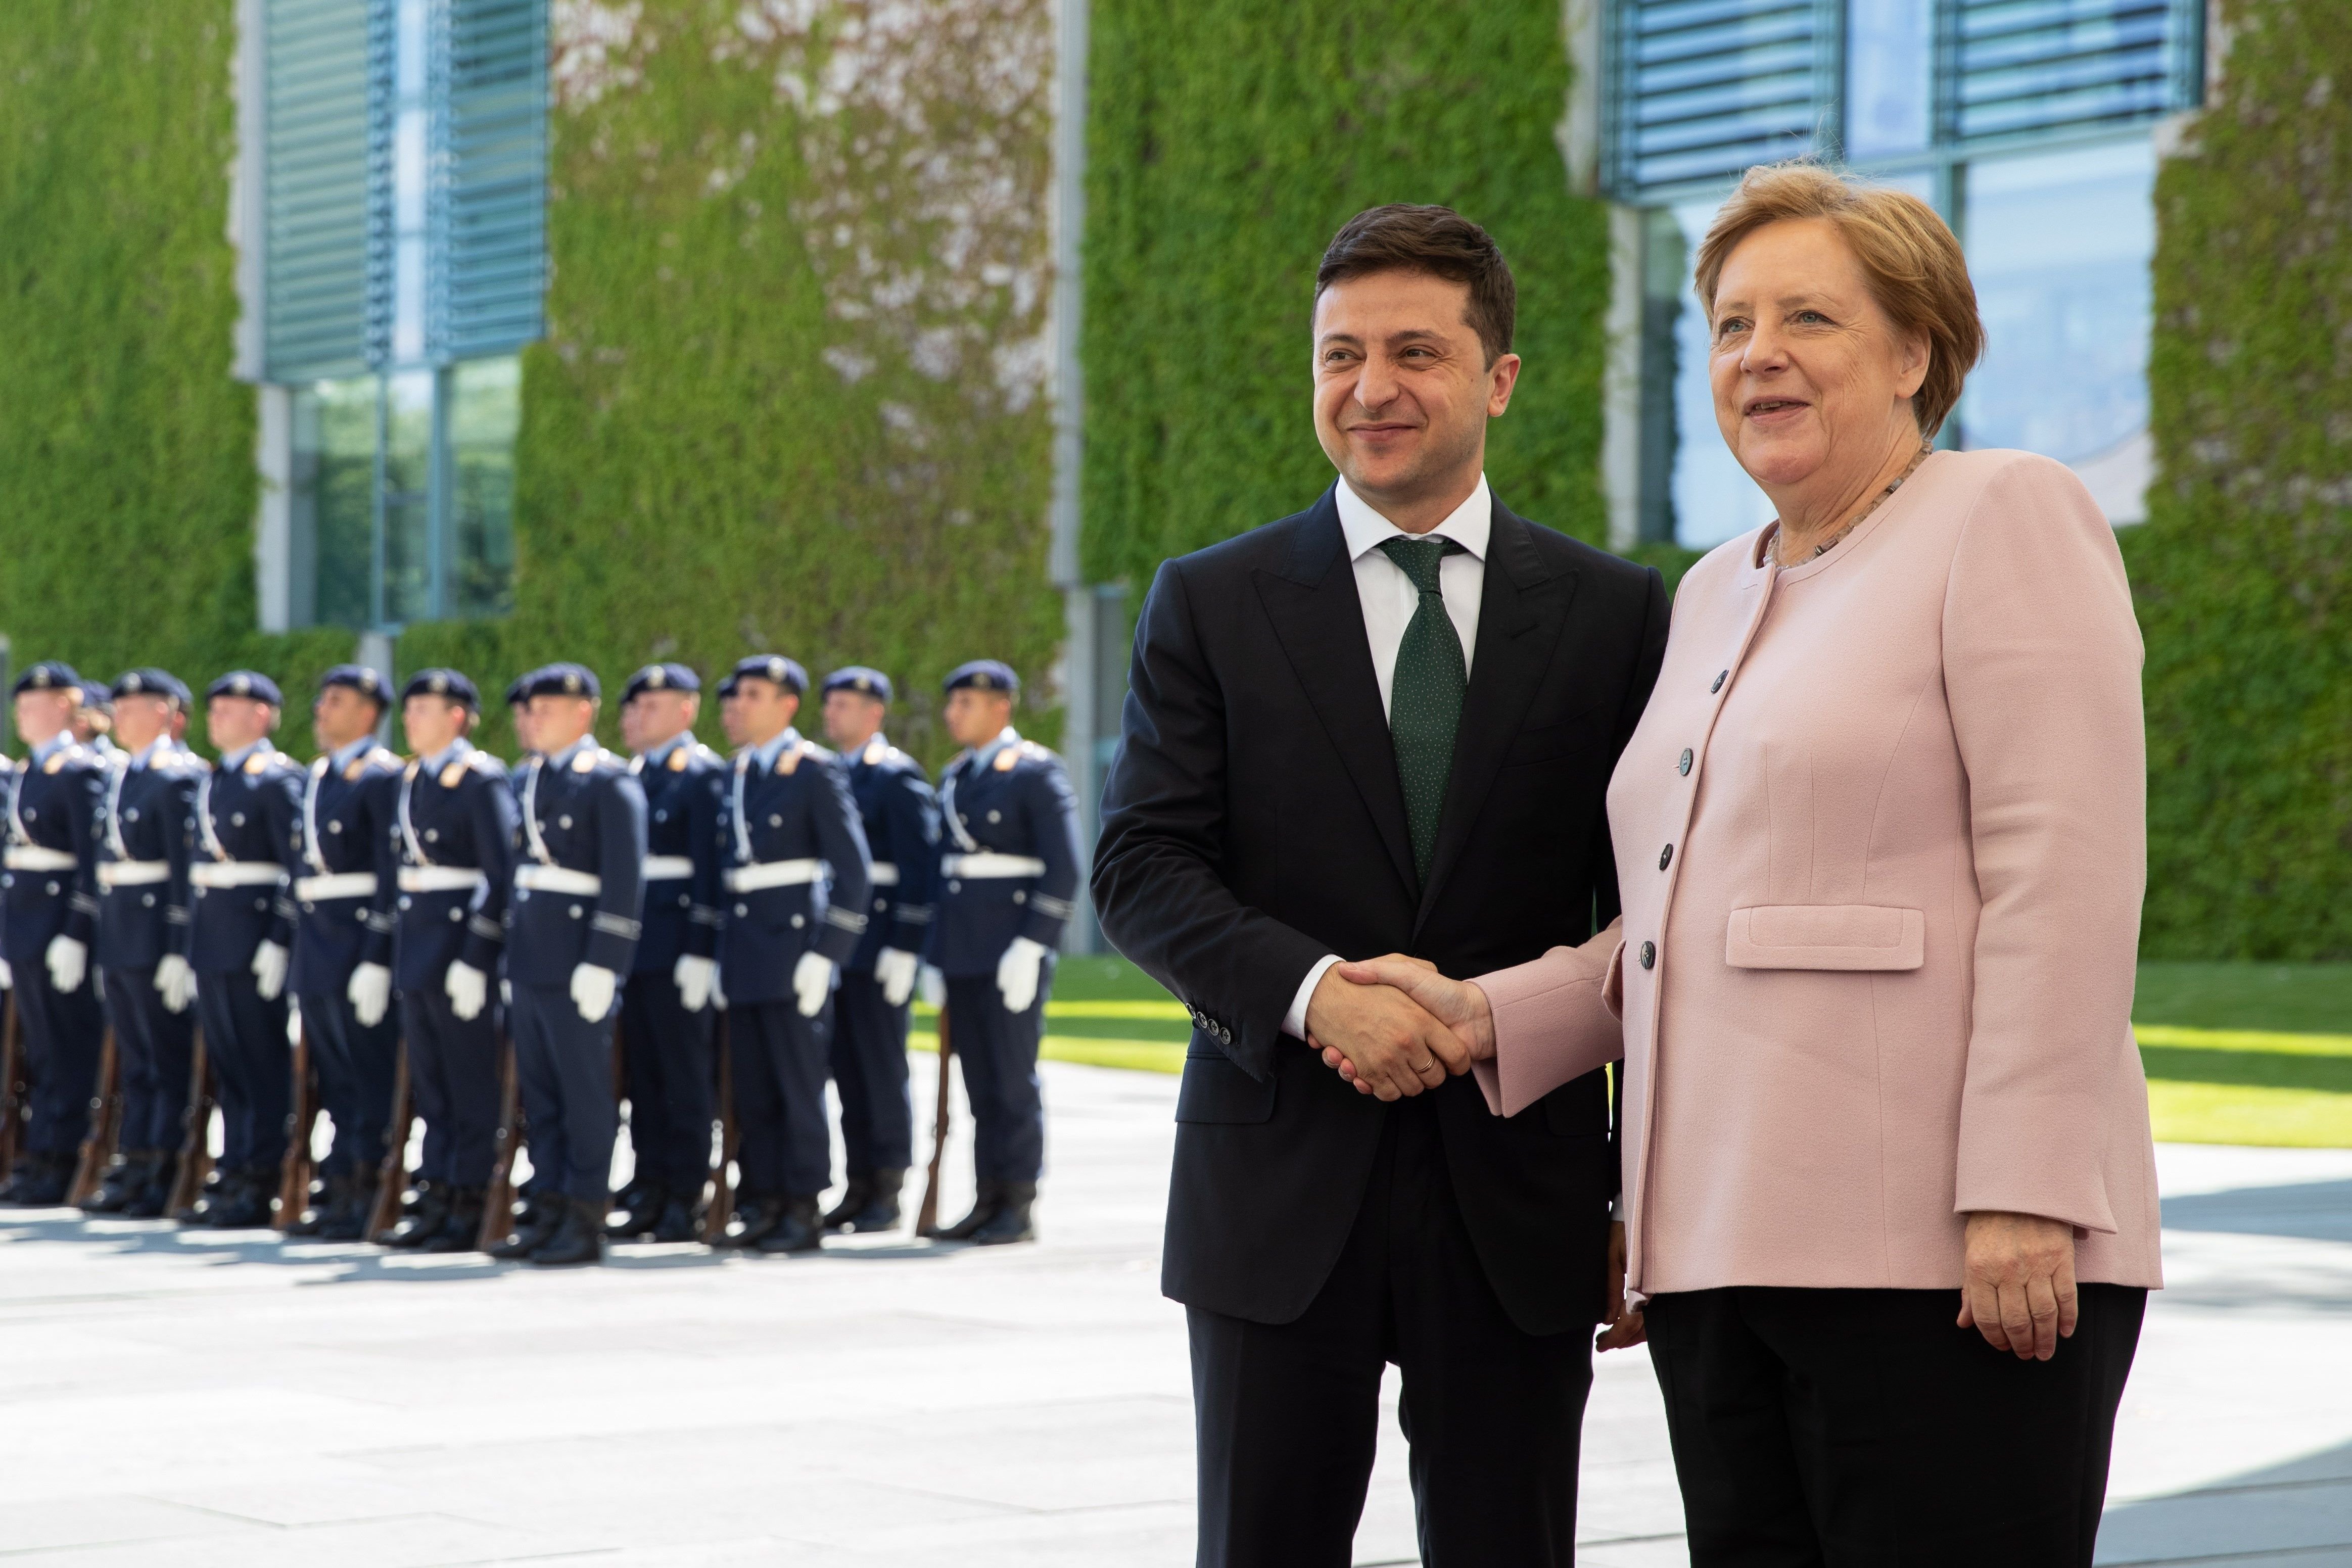 VÍDEO: Els estranys tremolors de Merkel a la recepció al president ucraïnès